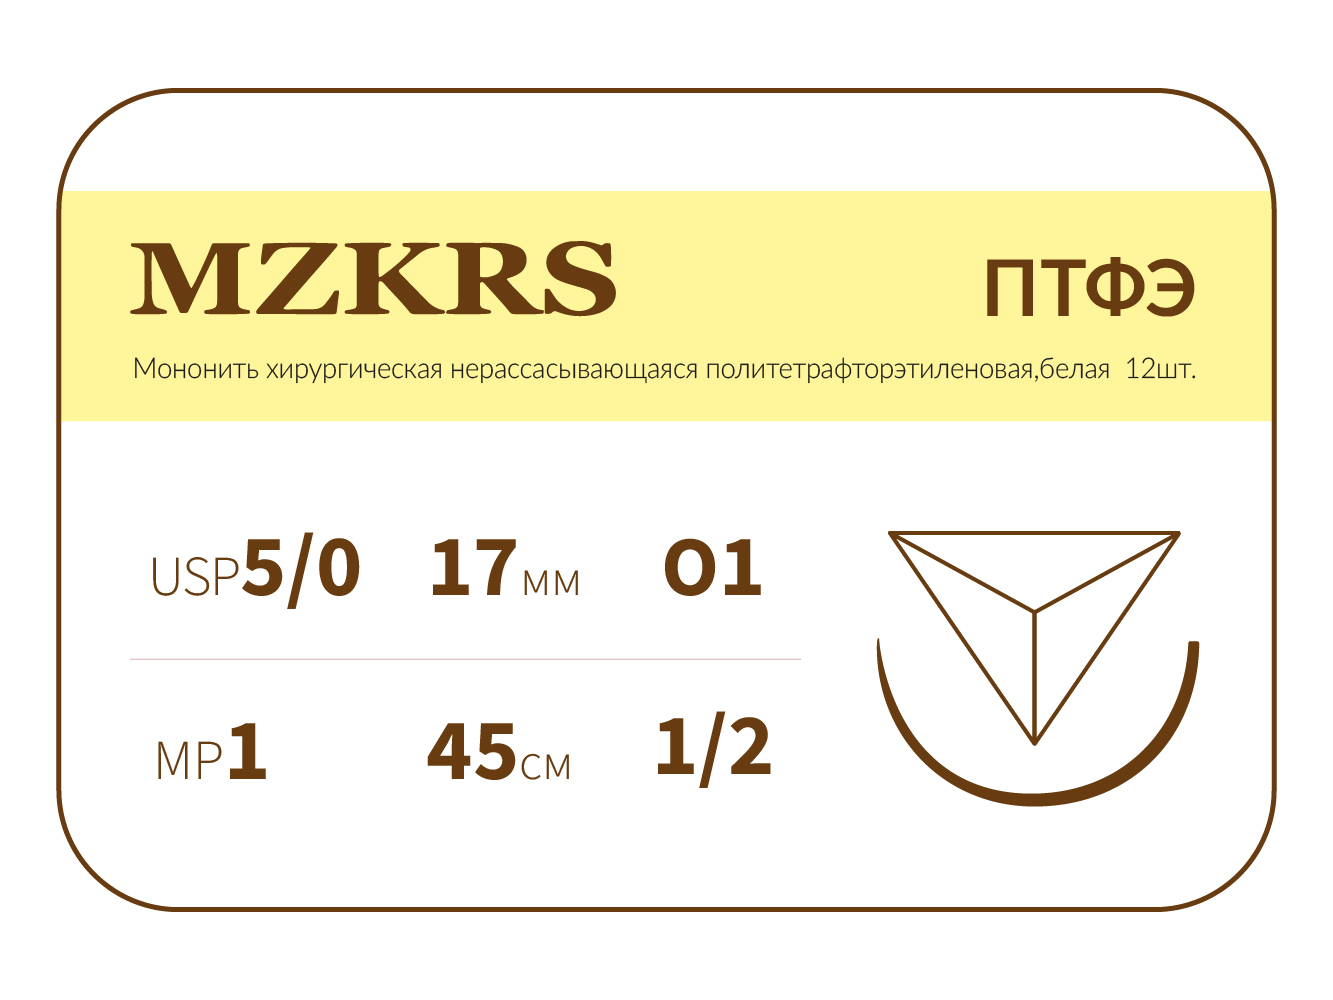 1712О1-Premium 5/0 (1) 45 ПТФЭ хирургическая нить политетрафторэтиленовая, MZKRS (Россия)